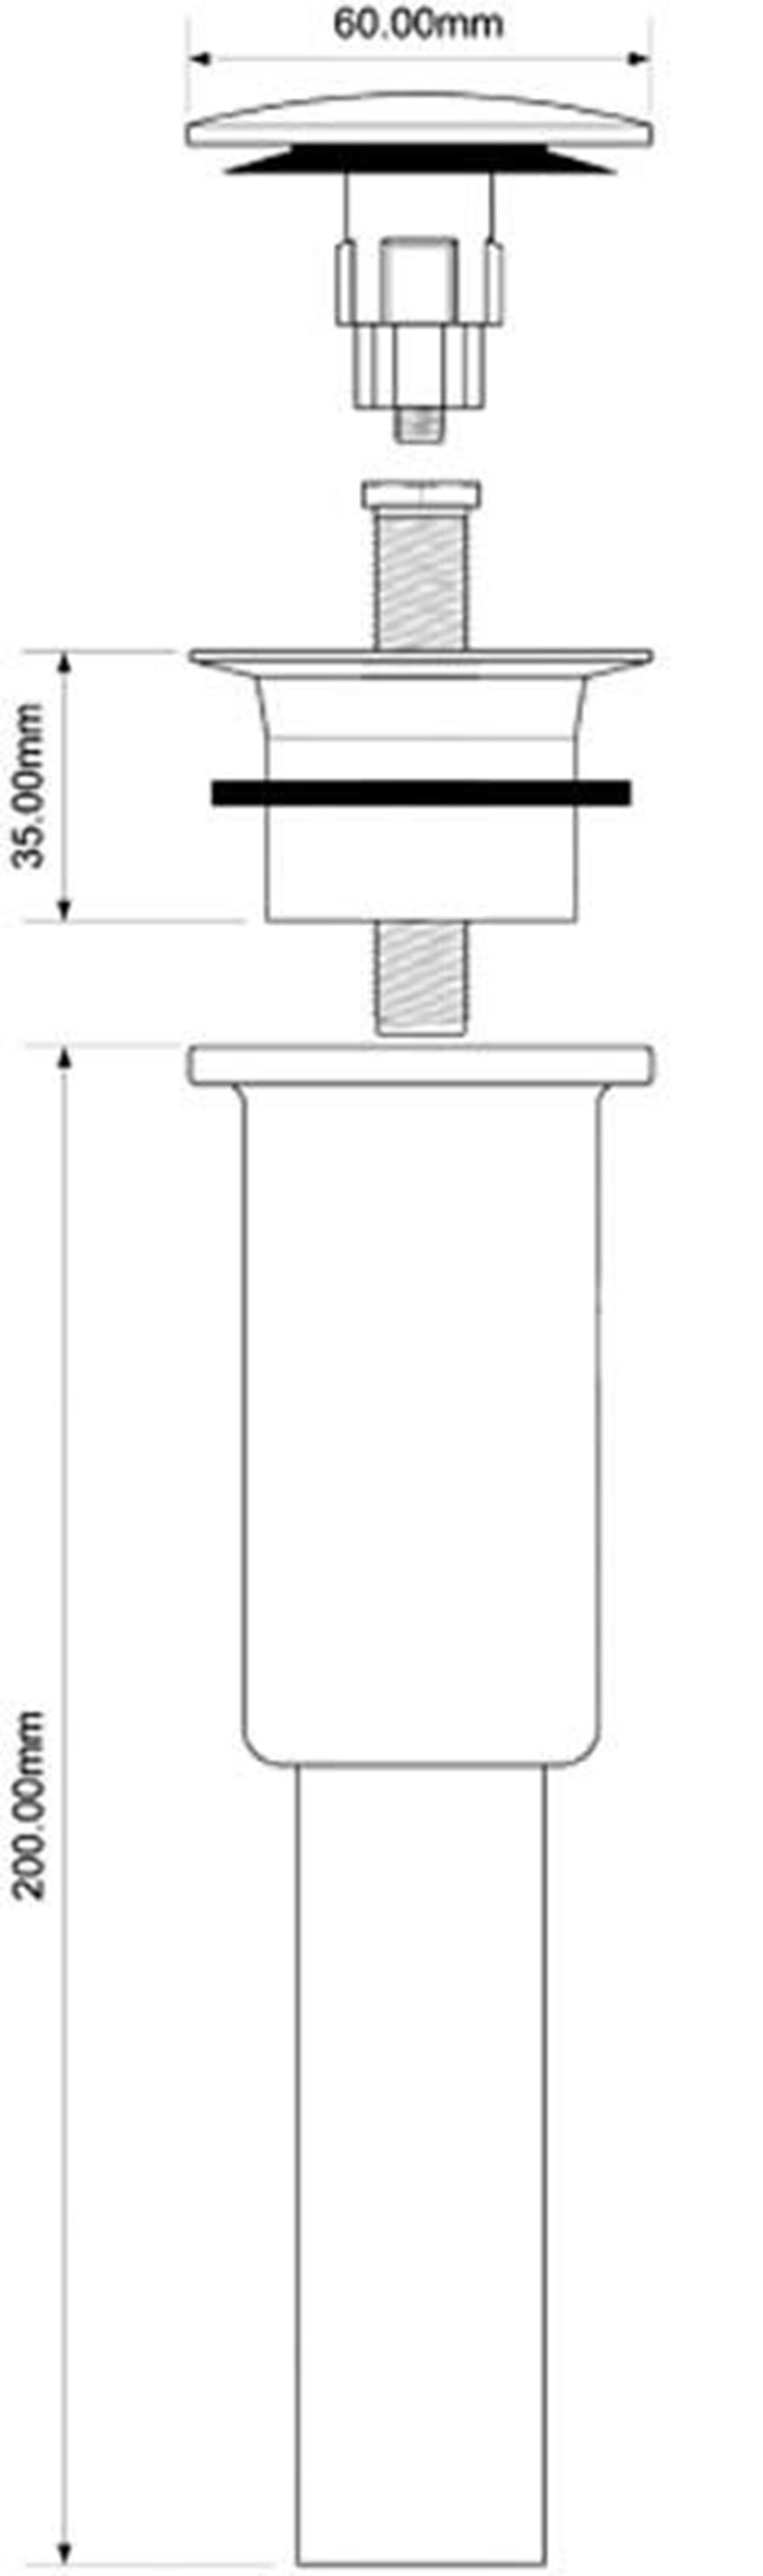 Spust umywalkowy kwadratowy McAlpine rysunek techniczny